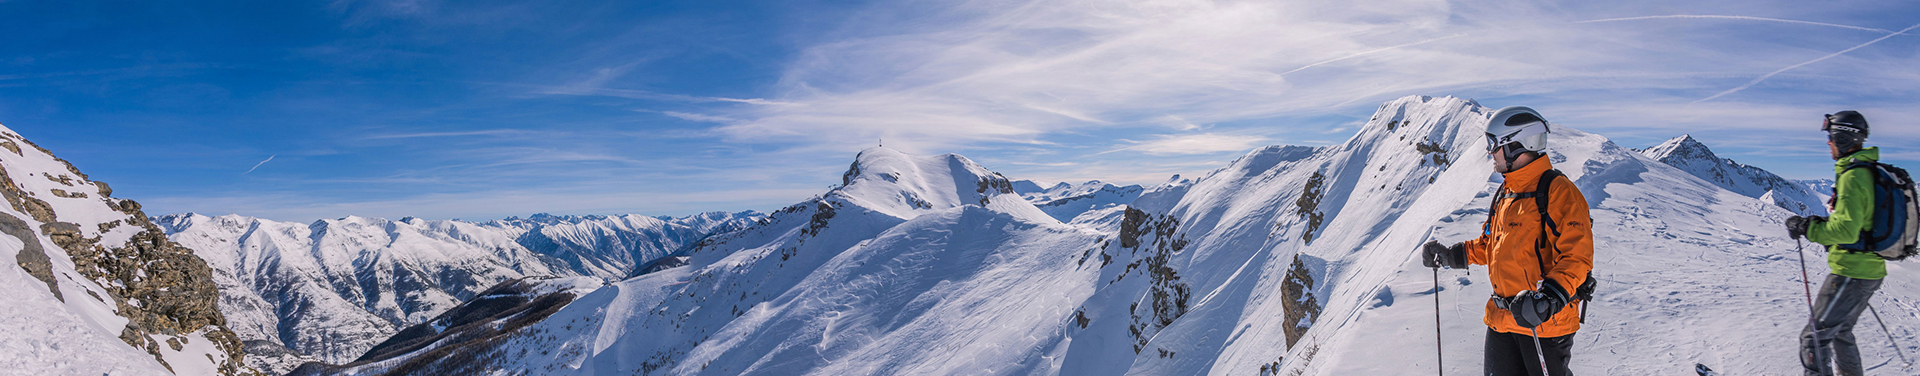 חופשת סקי בצרפת